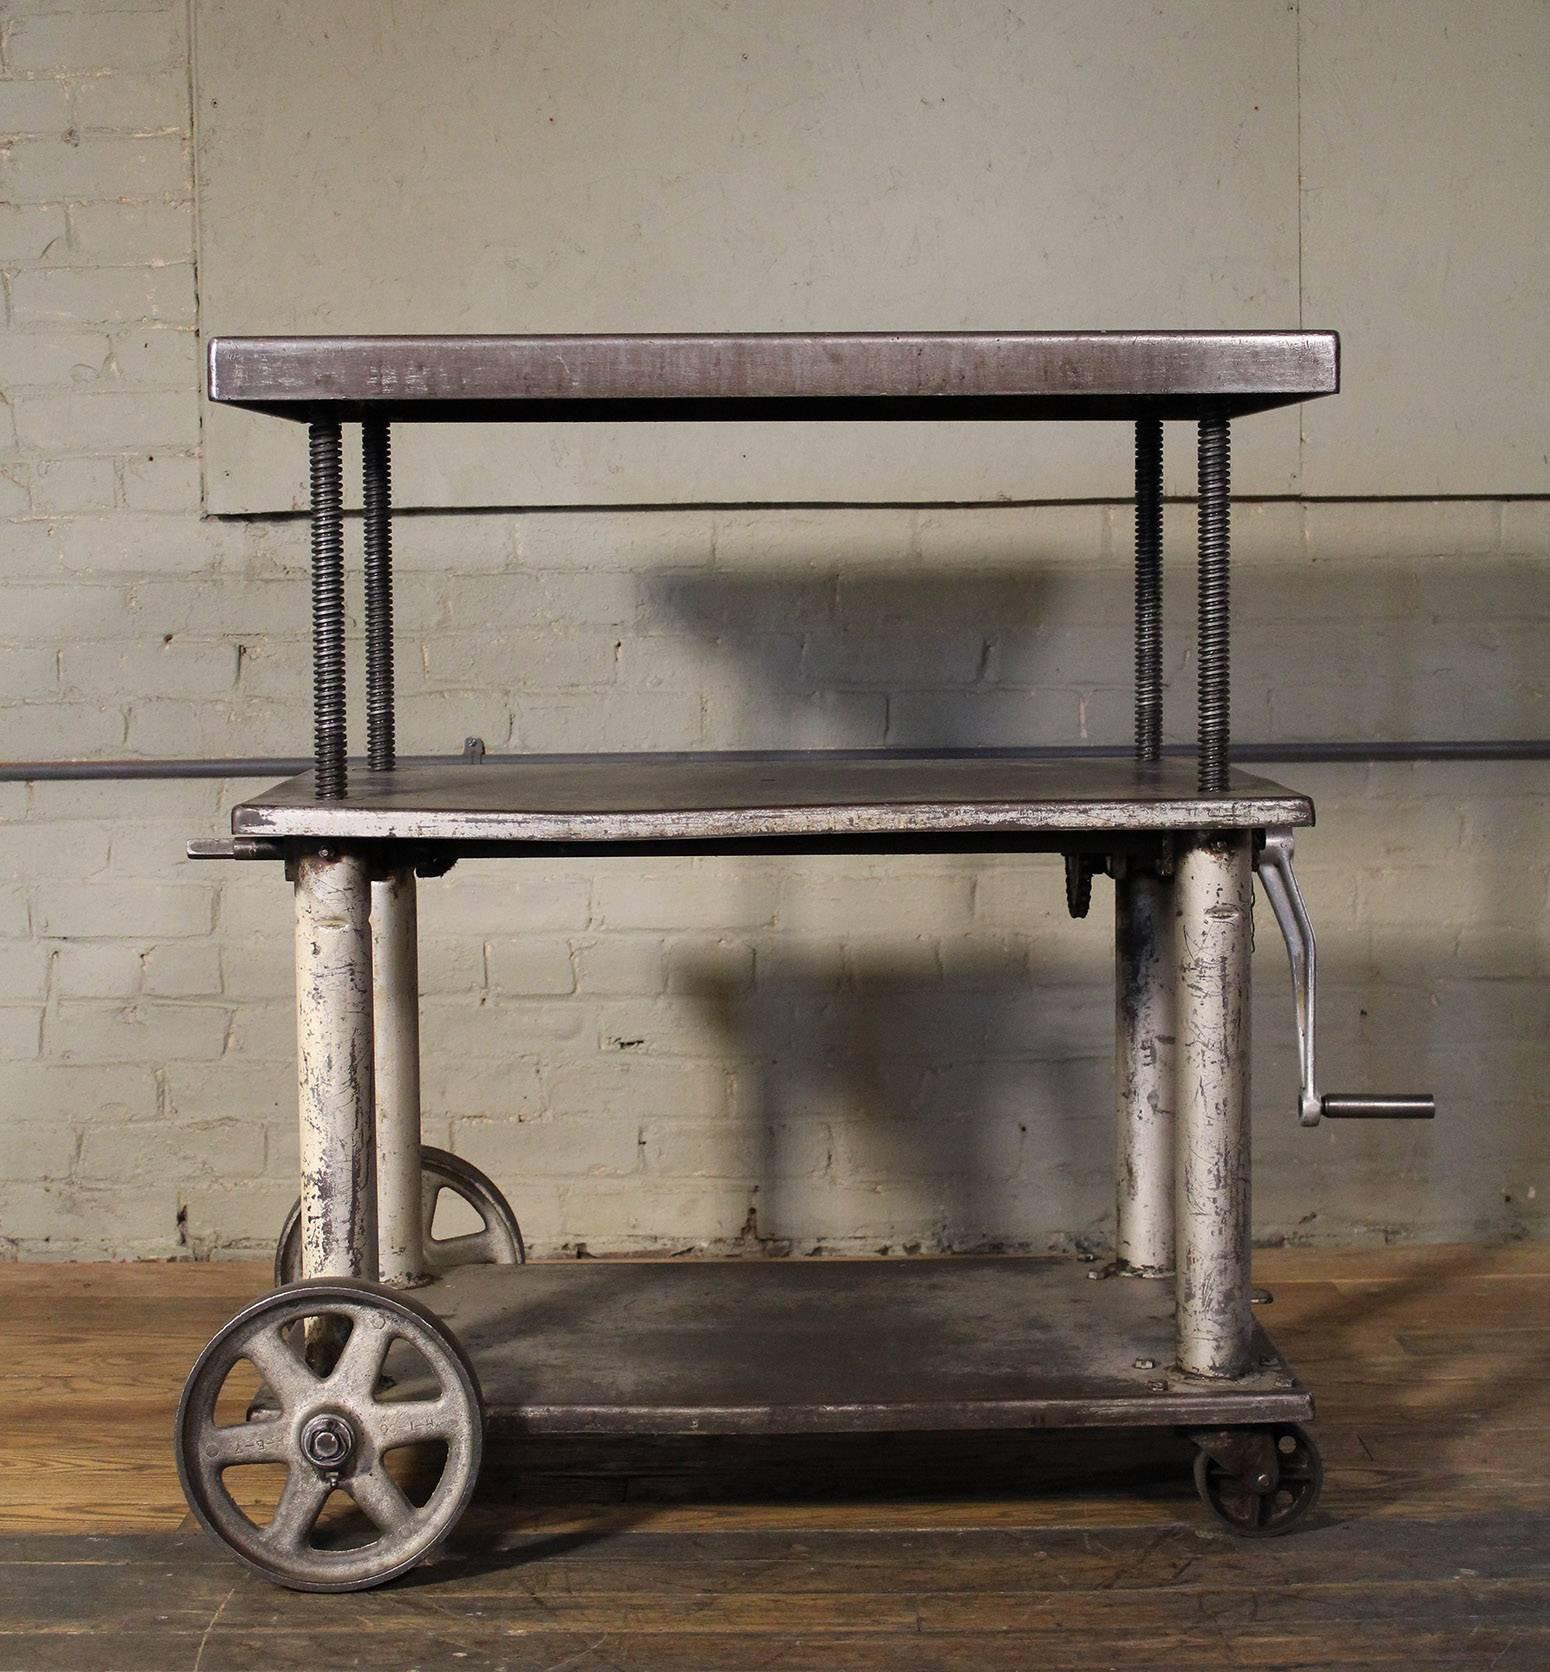 American Rolling Table, Lift Cart, Vintage Industrial Adjustable Steel Metal